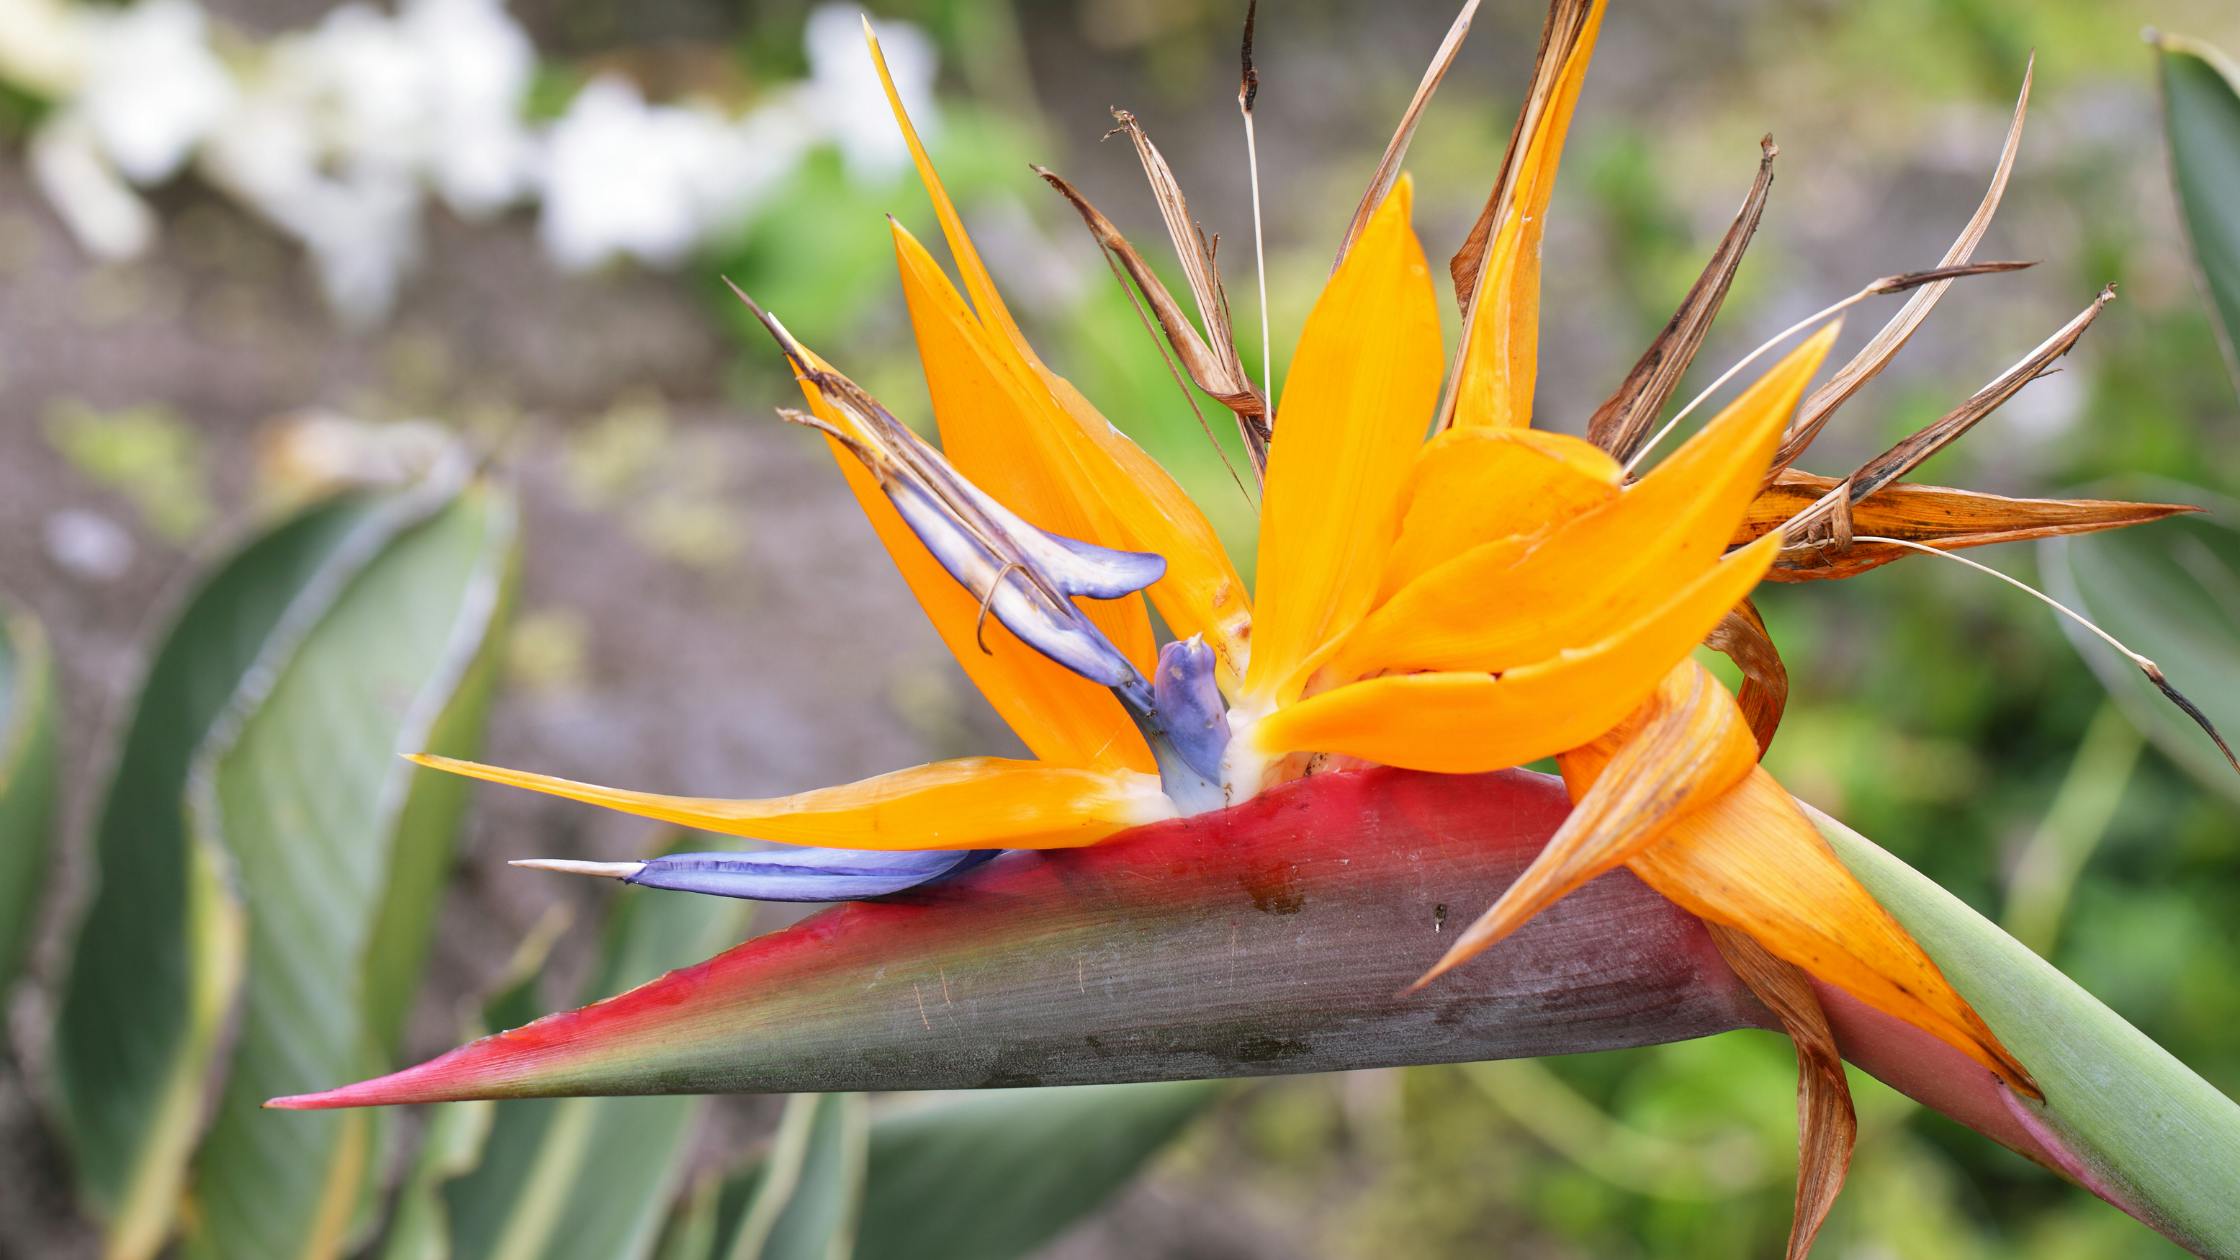 Kauai botanical gardens bird of paradise